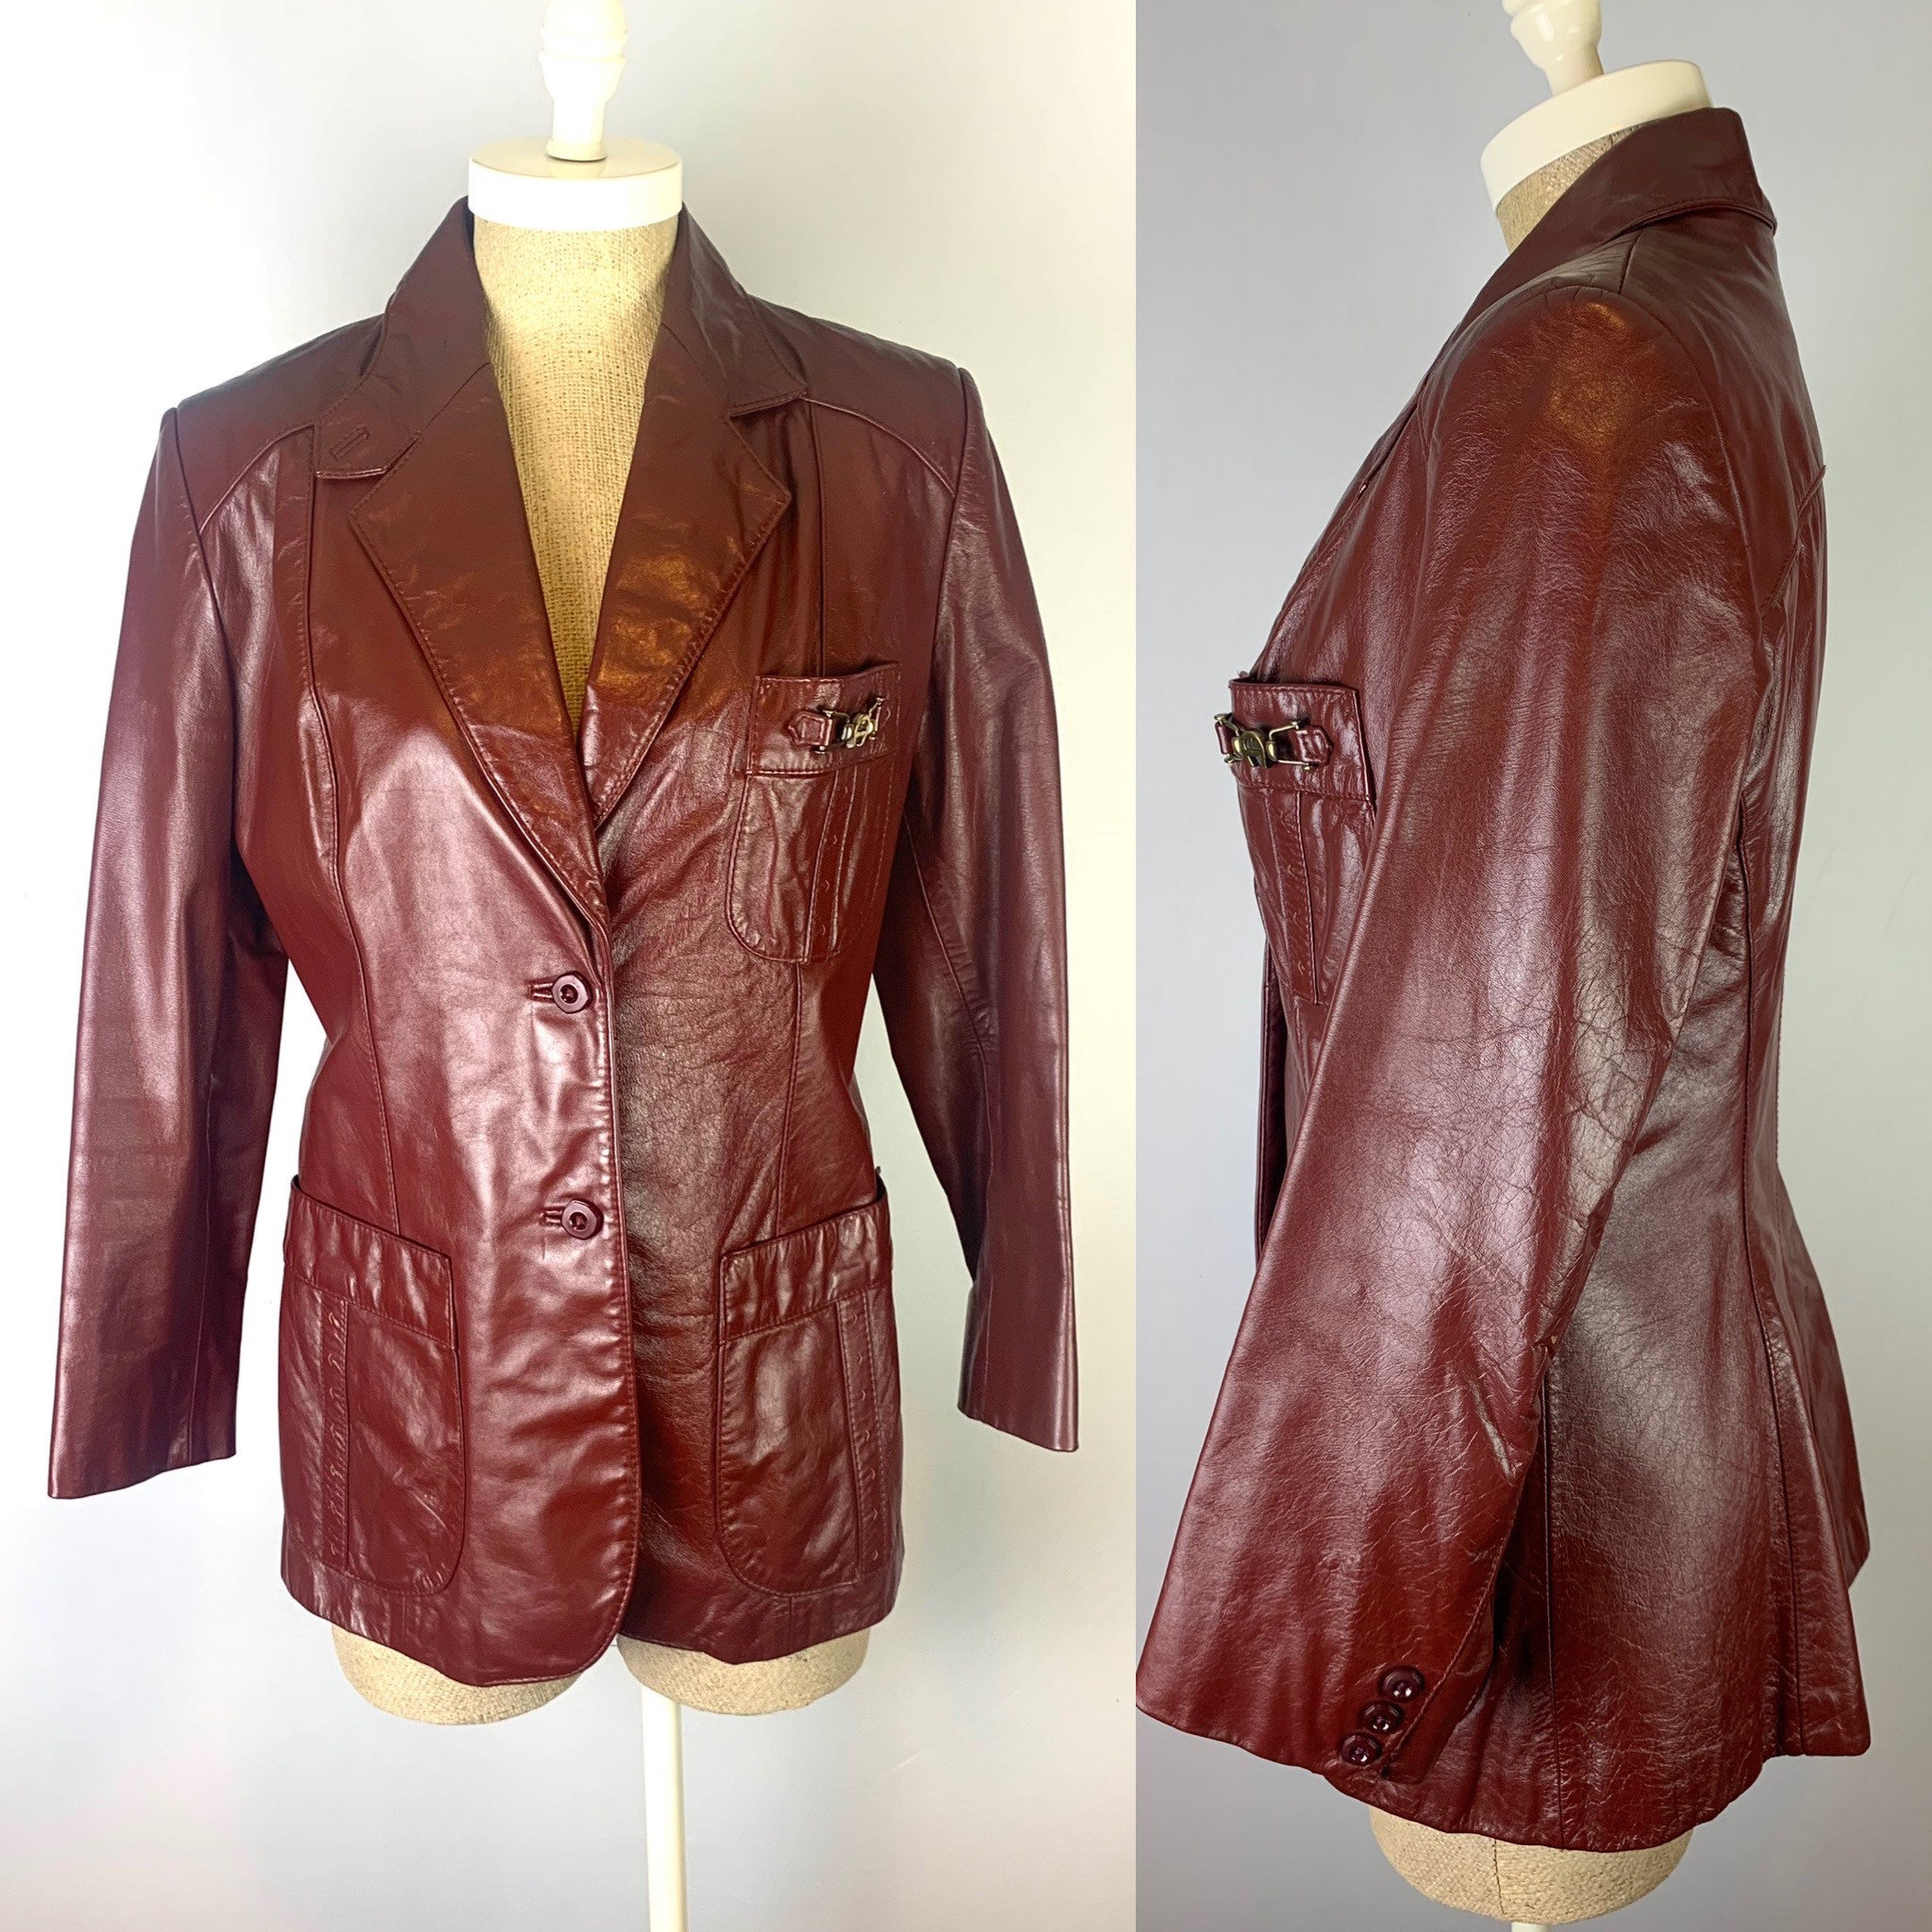 Jacket Etsy Oxblood - Leather